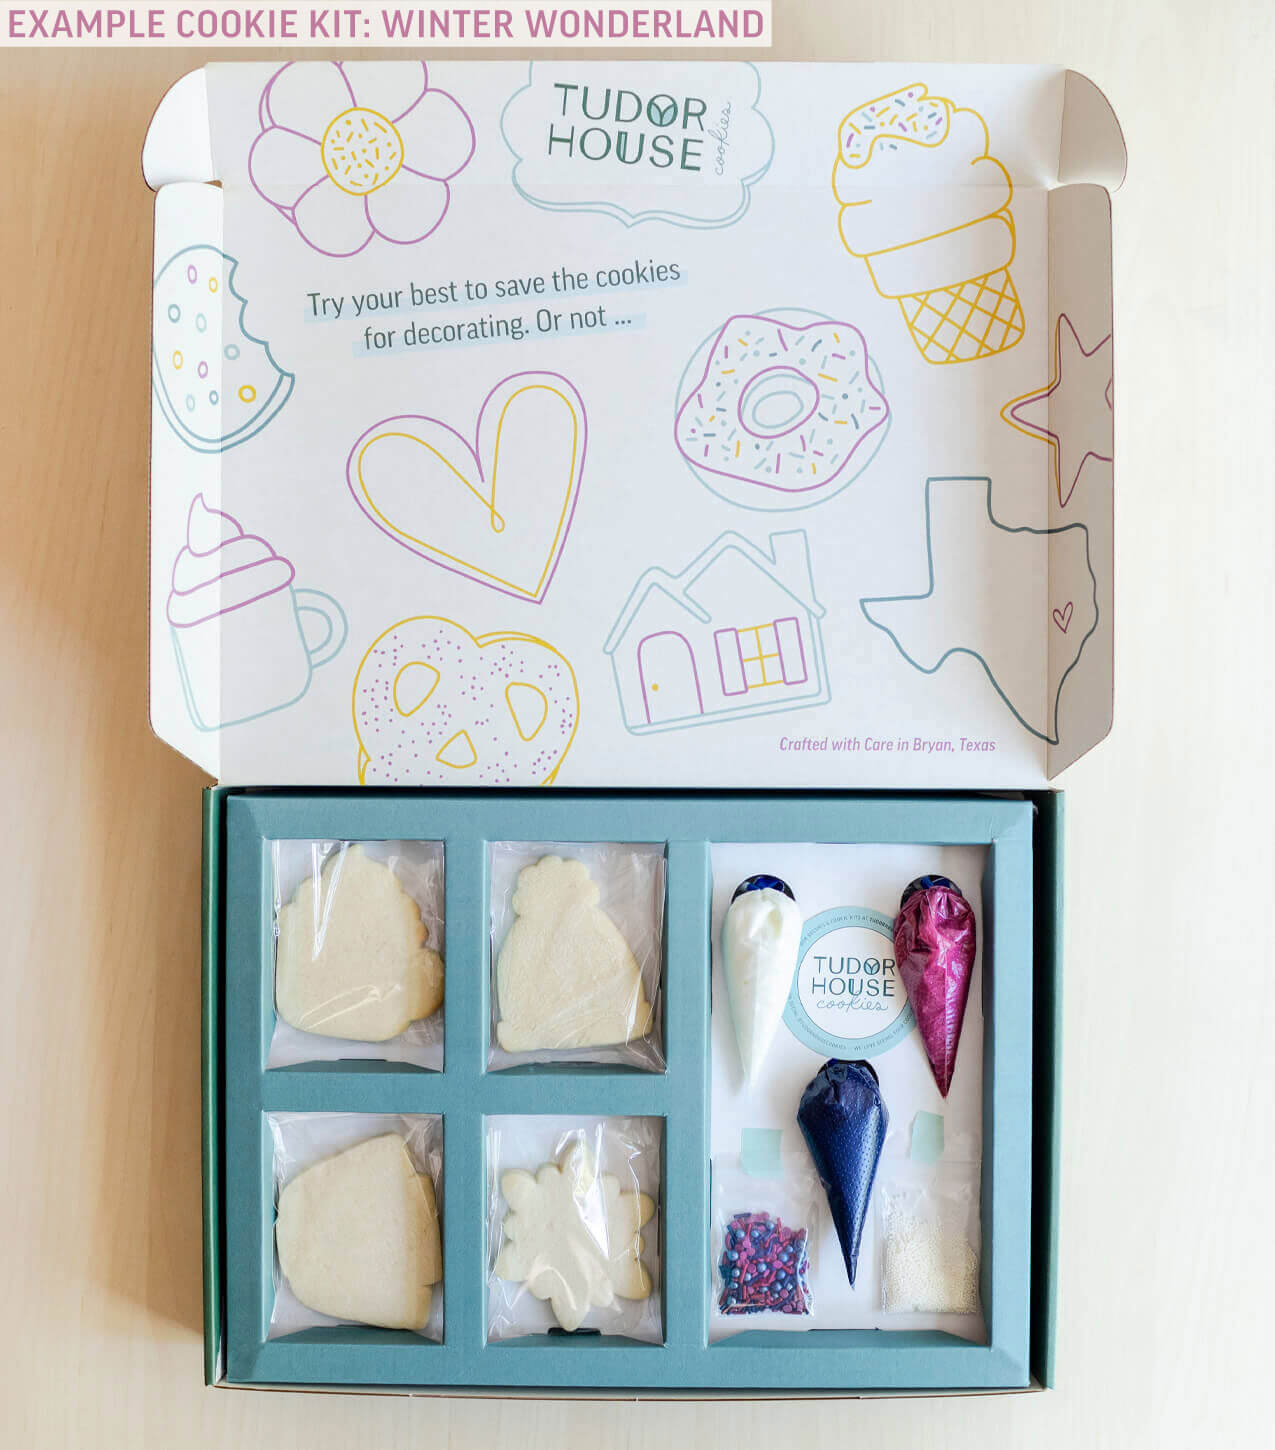 Tudor House Cookies - Winter Wonderland Cookie Kit Box